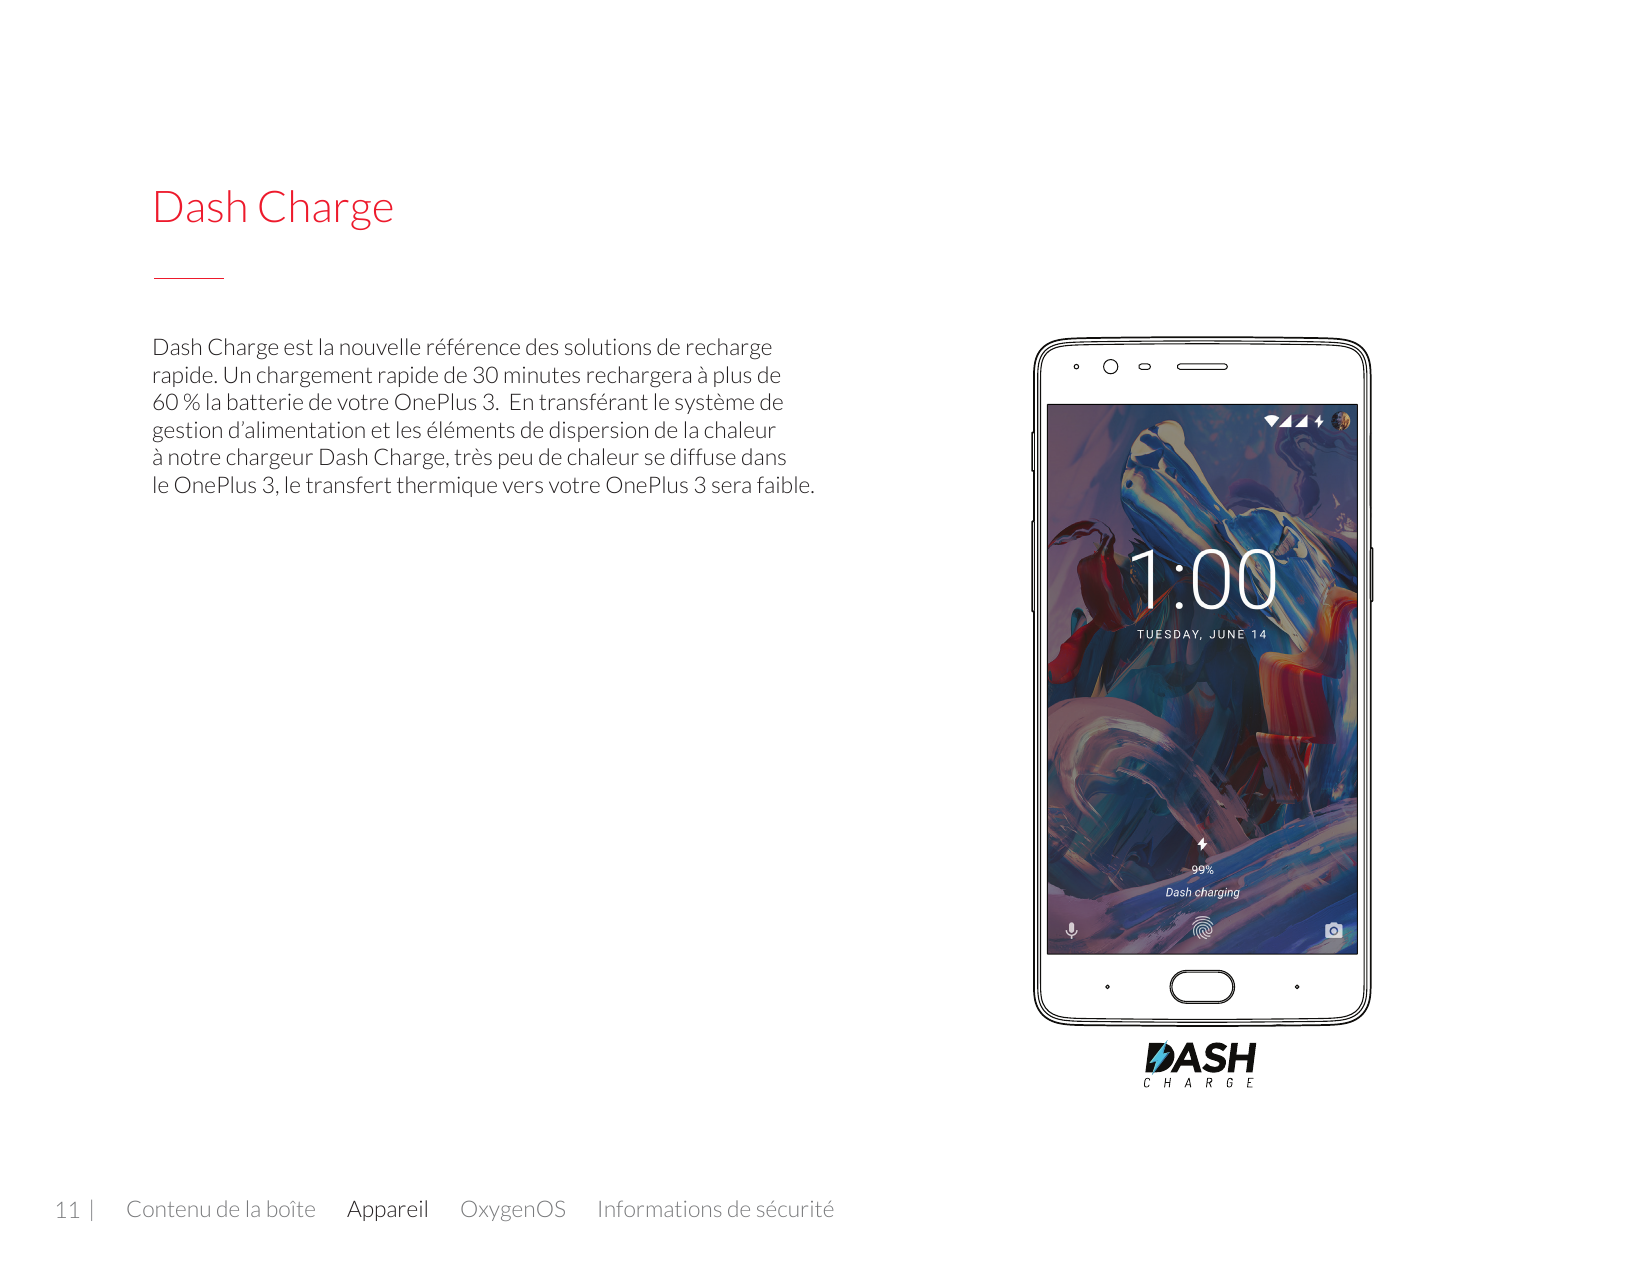 Dash ChargeDash Charge est la nouvelle référence des solutions de rechargerapide. Un chargement rapide de 30 minutes rechargera 